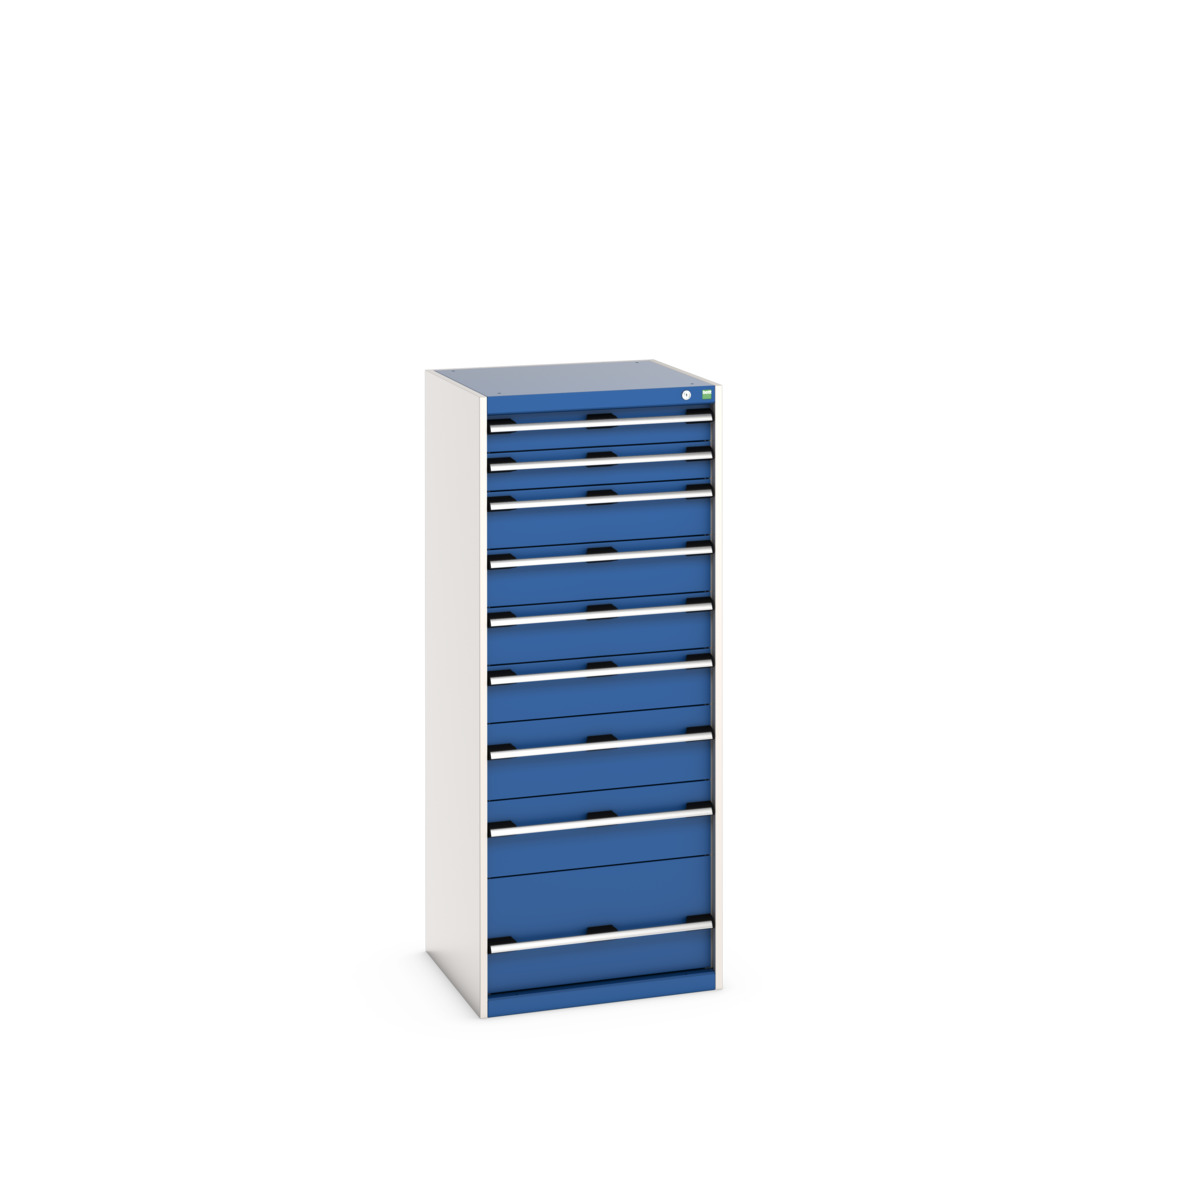 40019154.11V - cubio drawer cabinet